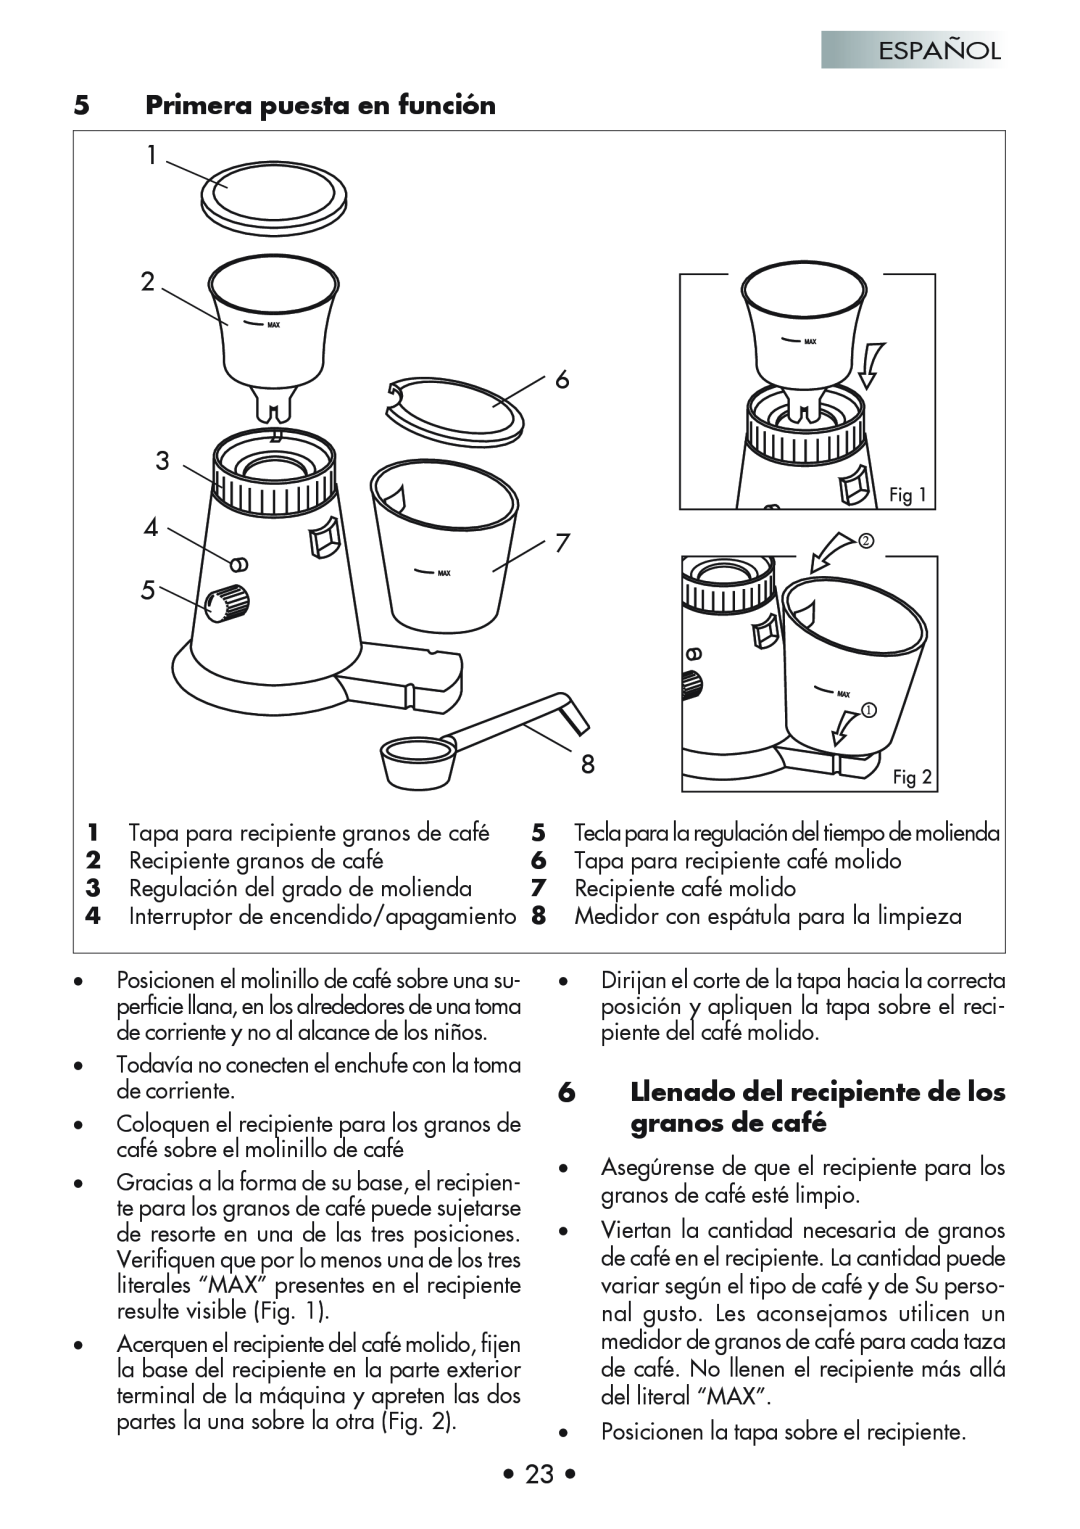 Gaggia Coffee Grinder Mod. MM Steel manual Primera puesta en función, Llenado del recipiente de los granos de café 